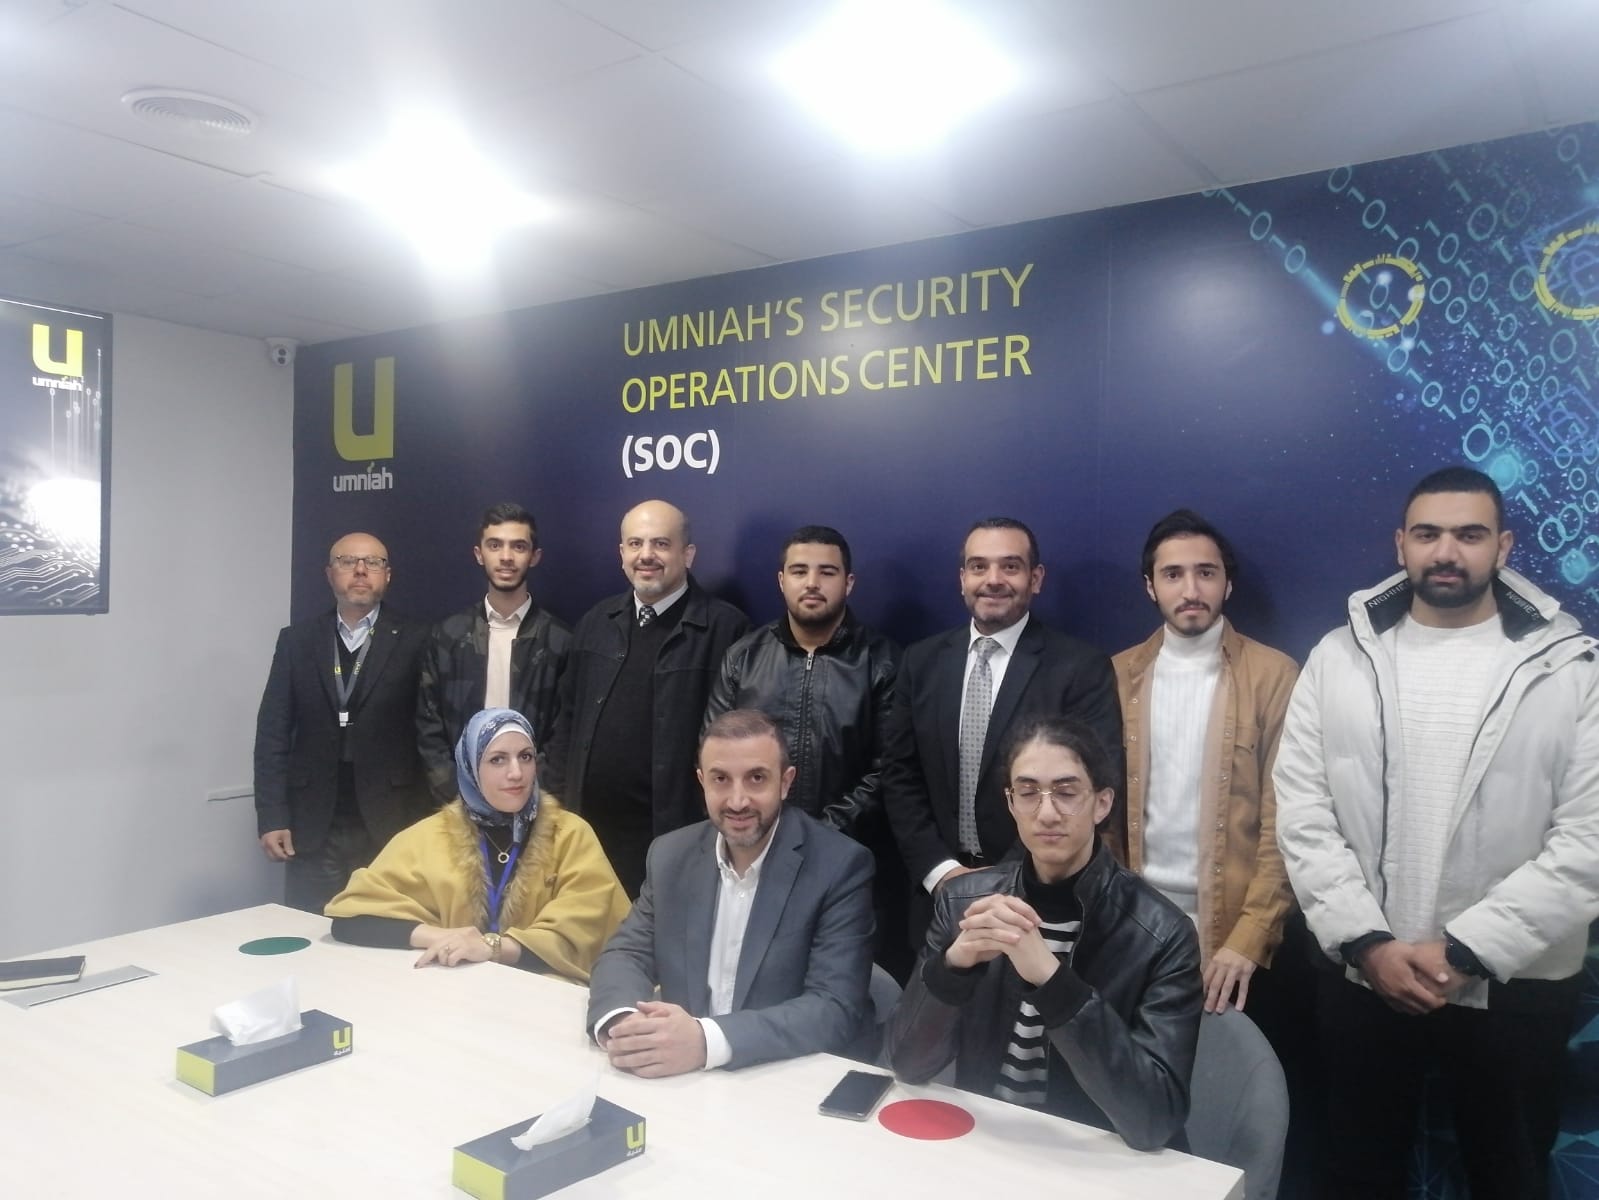 العلوم الحاسوبية والمعلوماتية في "عمان العربية" تنظم زيارة علمية لمركز أمنية لإدارة عمليات الأمن السيبراني (SOC)3